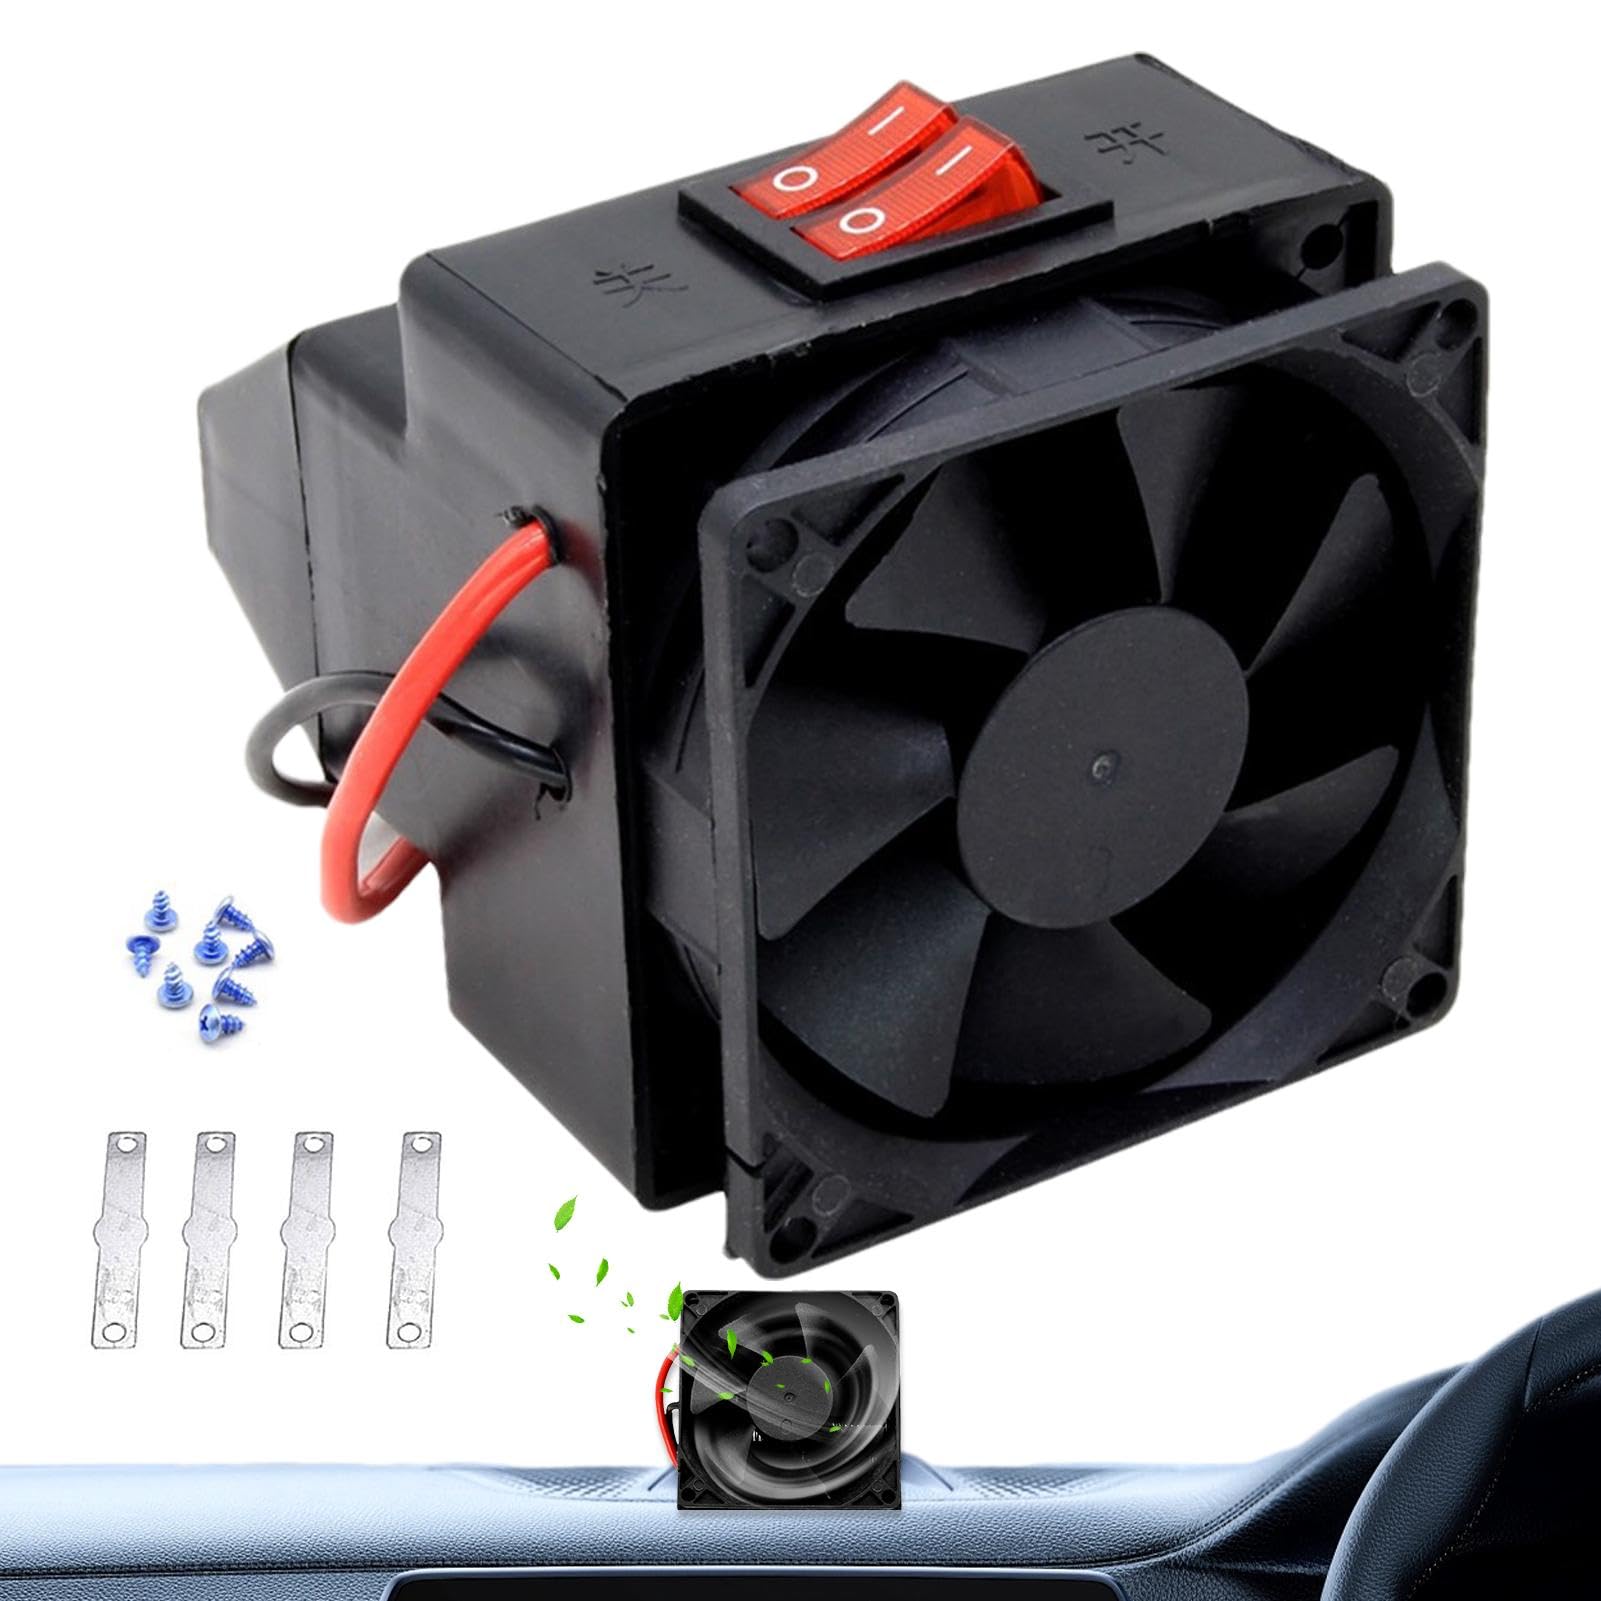 Xtauaguh Auto-Windschutzscheiben-Entfroster, tragbare Autoheizung | 300 W Demister-Wärmegebläse-Automatiktrockner - Windschutzscheiben-Enteiser, Fenster-Heizungsventilator, schnelles Abtauen, von Xtauaguh